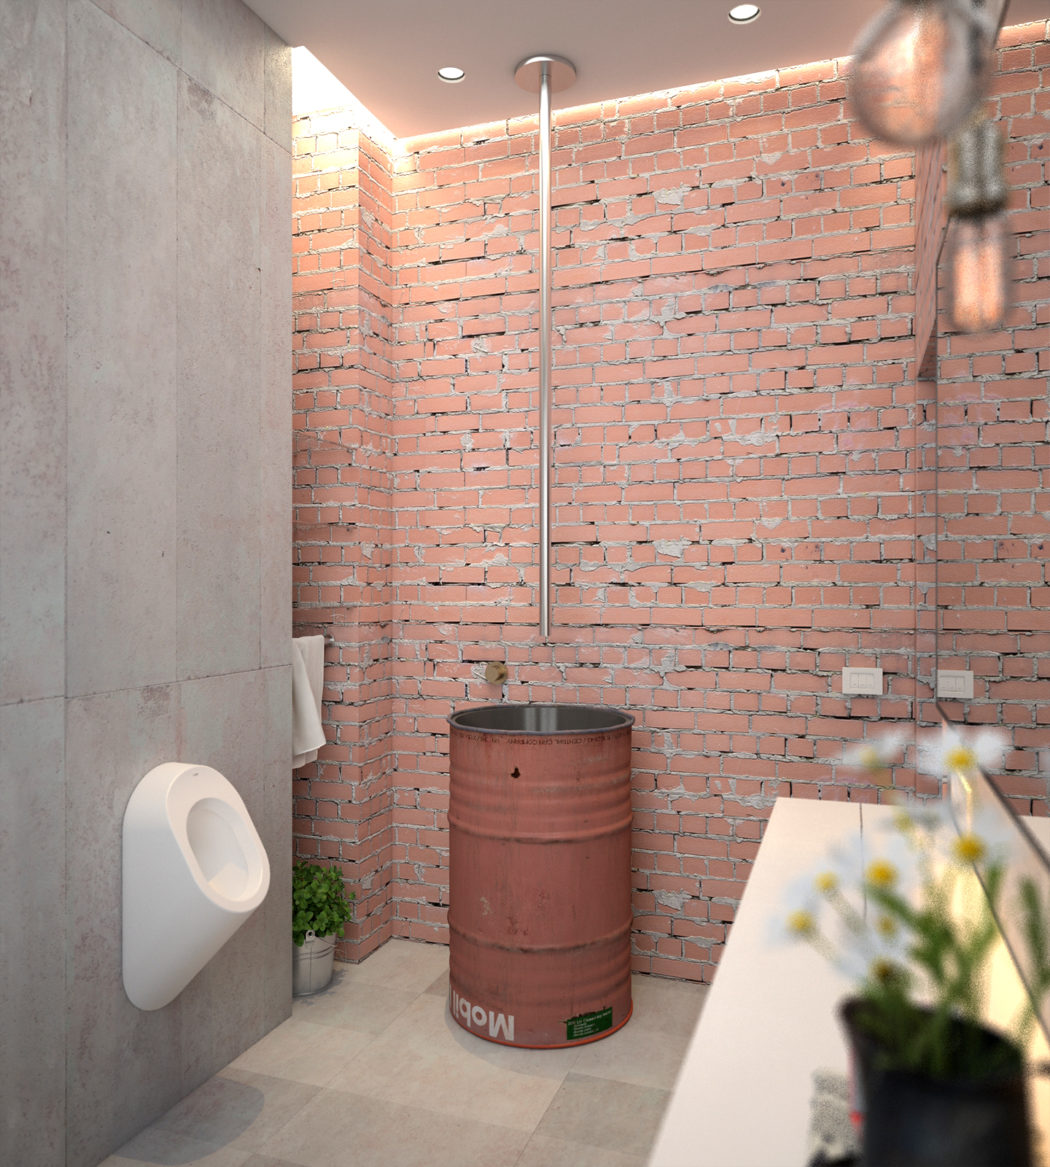 Phòng tắm cũng được thiết kế theo phong cách công nghiệp với tường gạch thô, tường xi măng và một chiếc thùng phuy